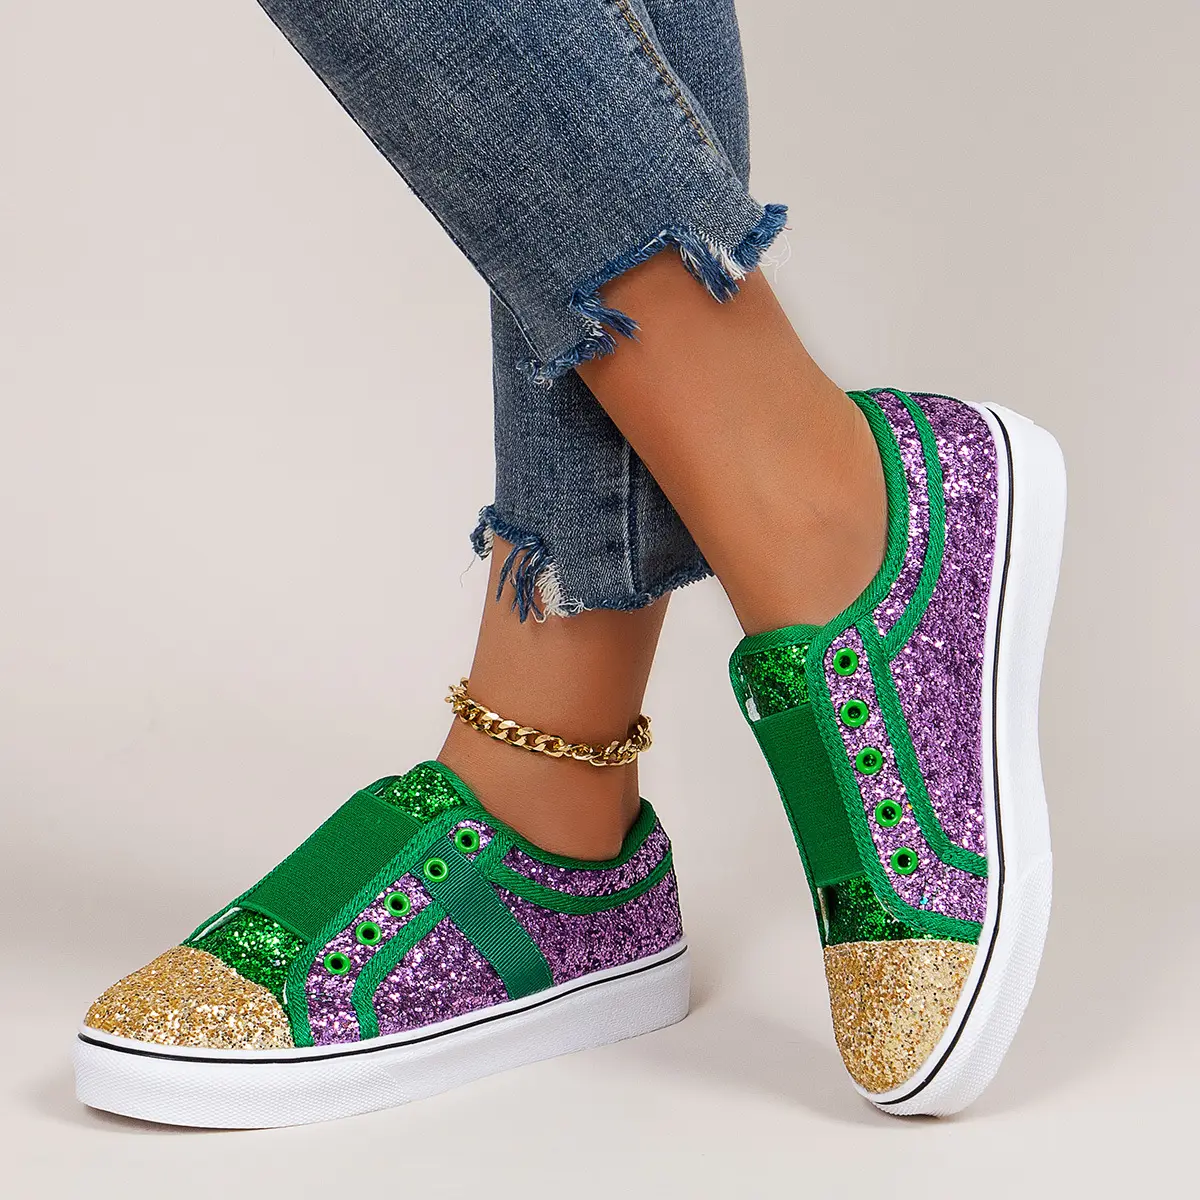 2021 New trendy paillettes patchwork scarpe casual delle donne slittamento piatto su scarpe per le signore scintillio scarpe di tela scarpe alla moda